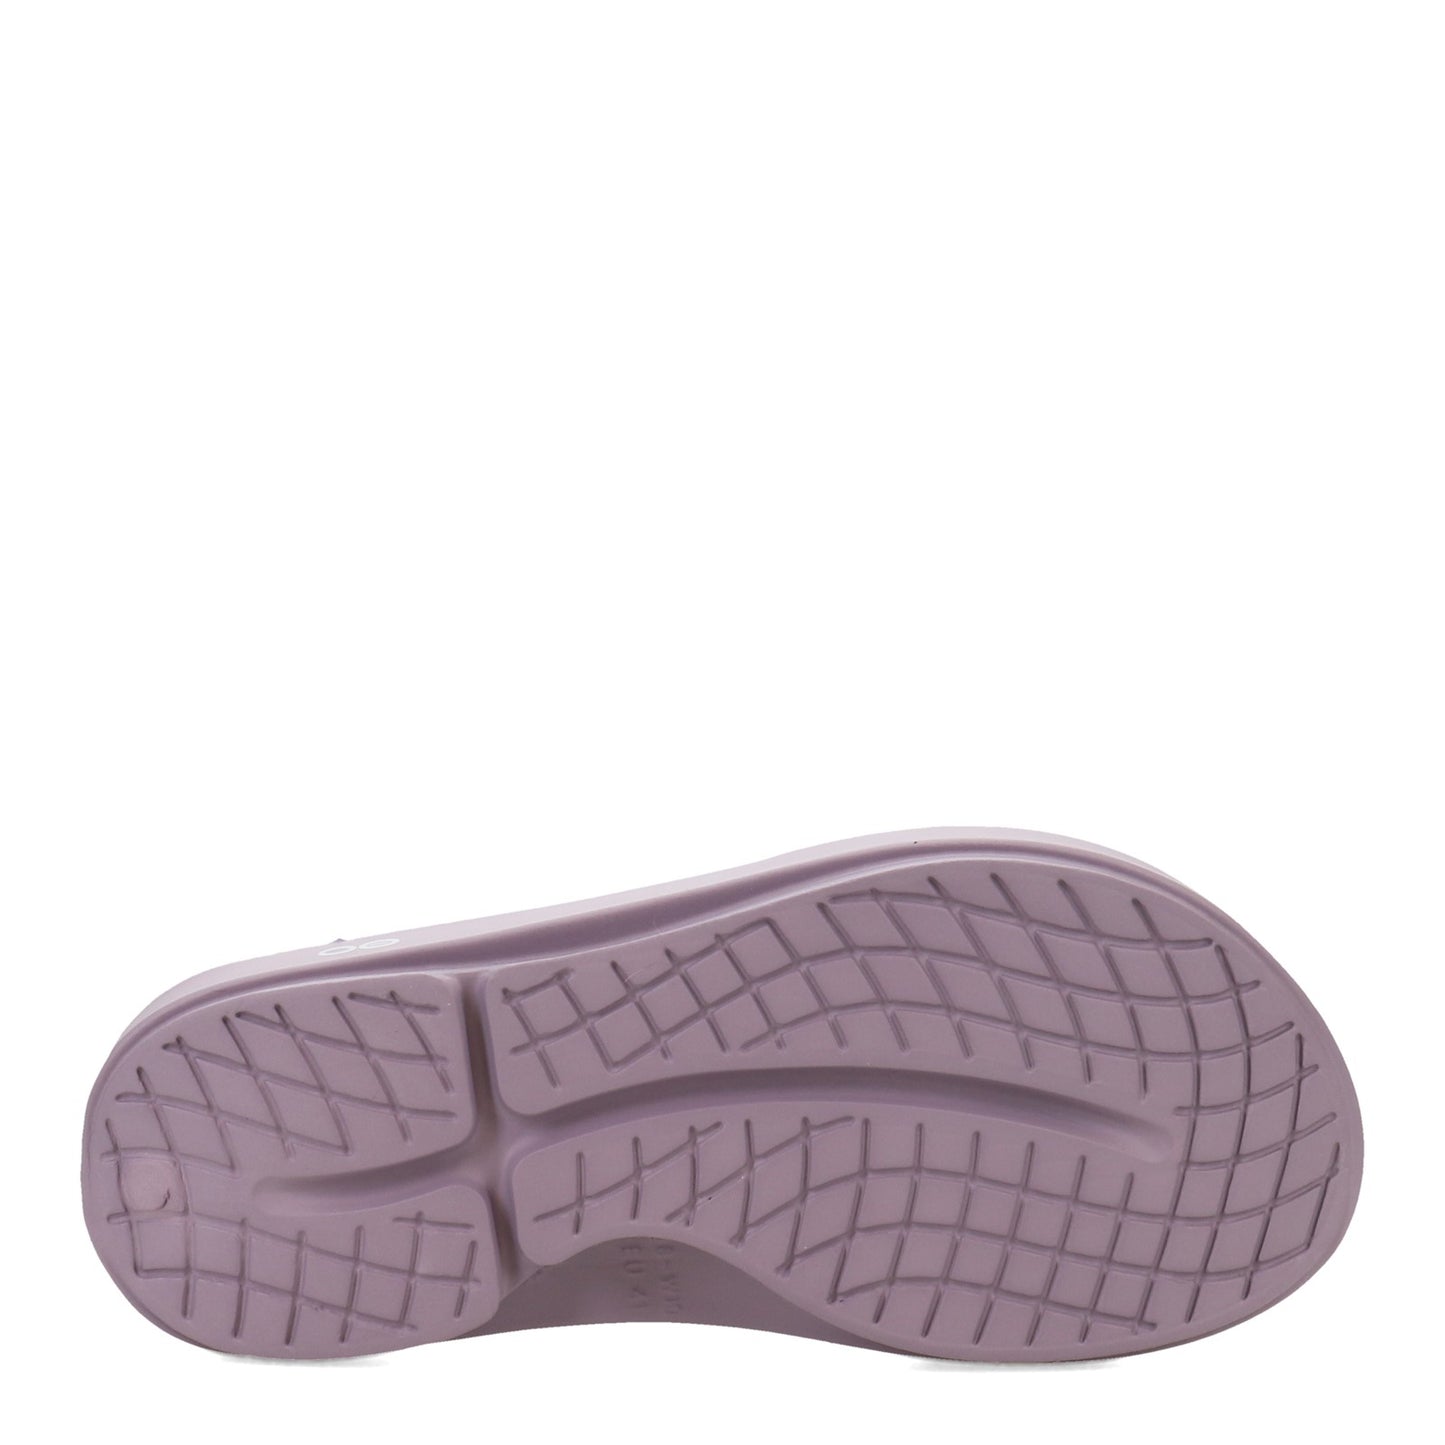 Peltz Shoes  Unisex Oofos OOriginal Flip Flop Thong Sandal MAUVE 1000-MAUVE